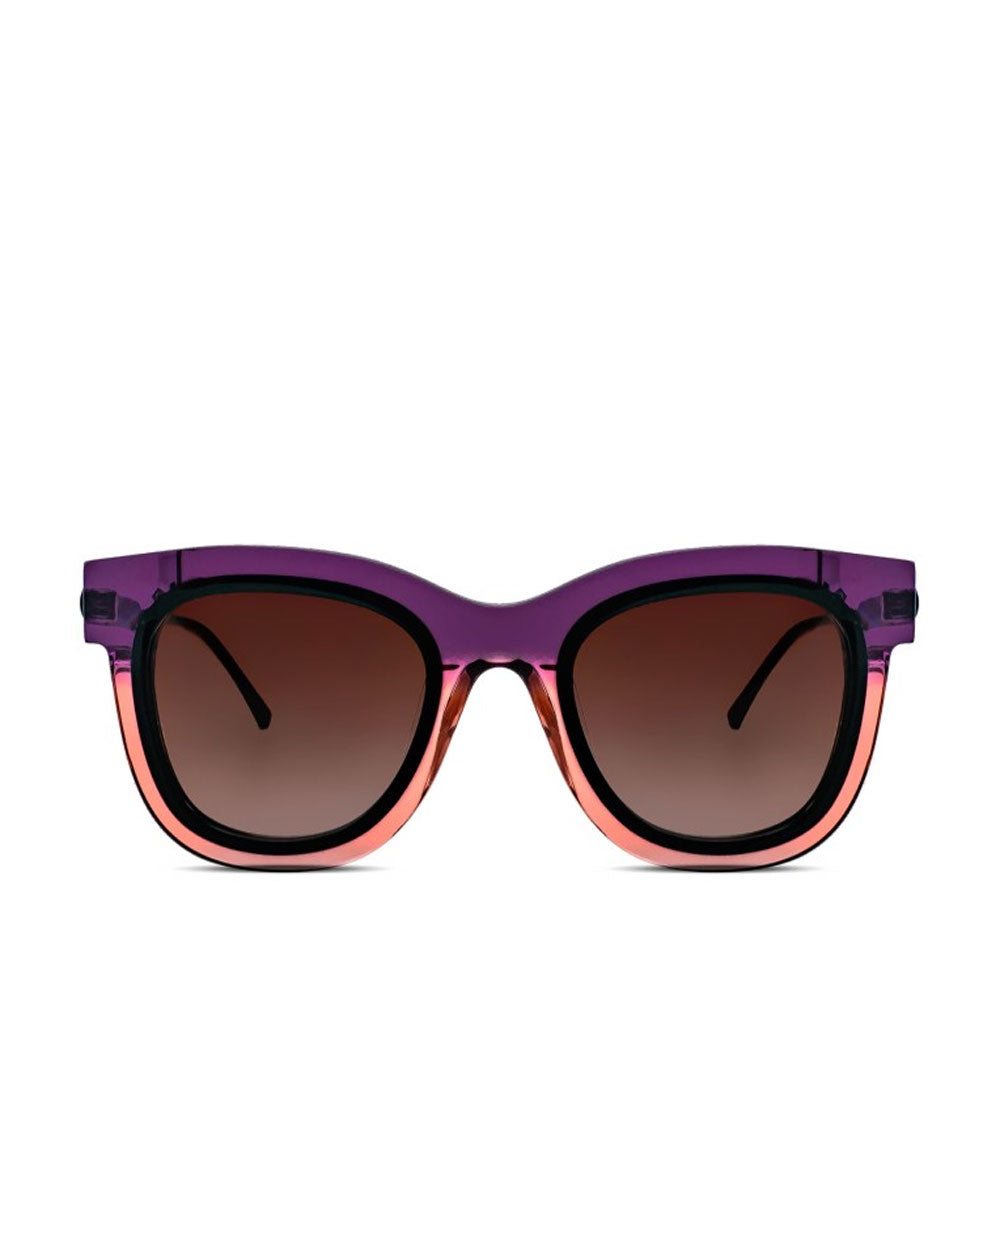 Elasty Glasses in Gradient Purple & Pink